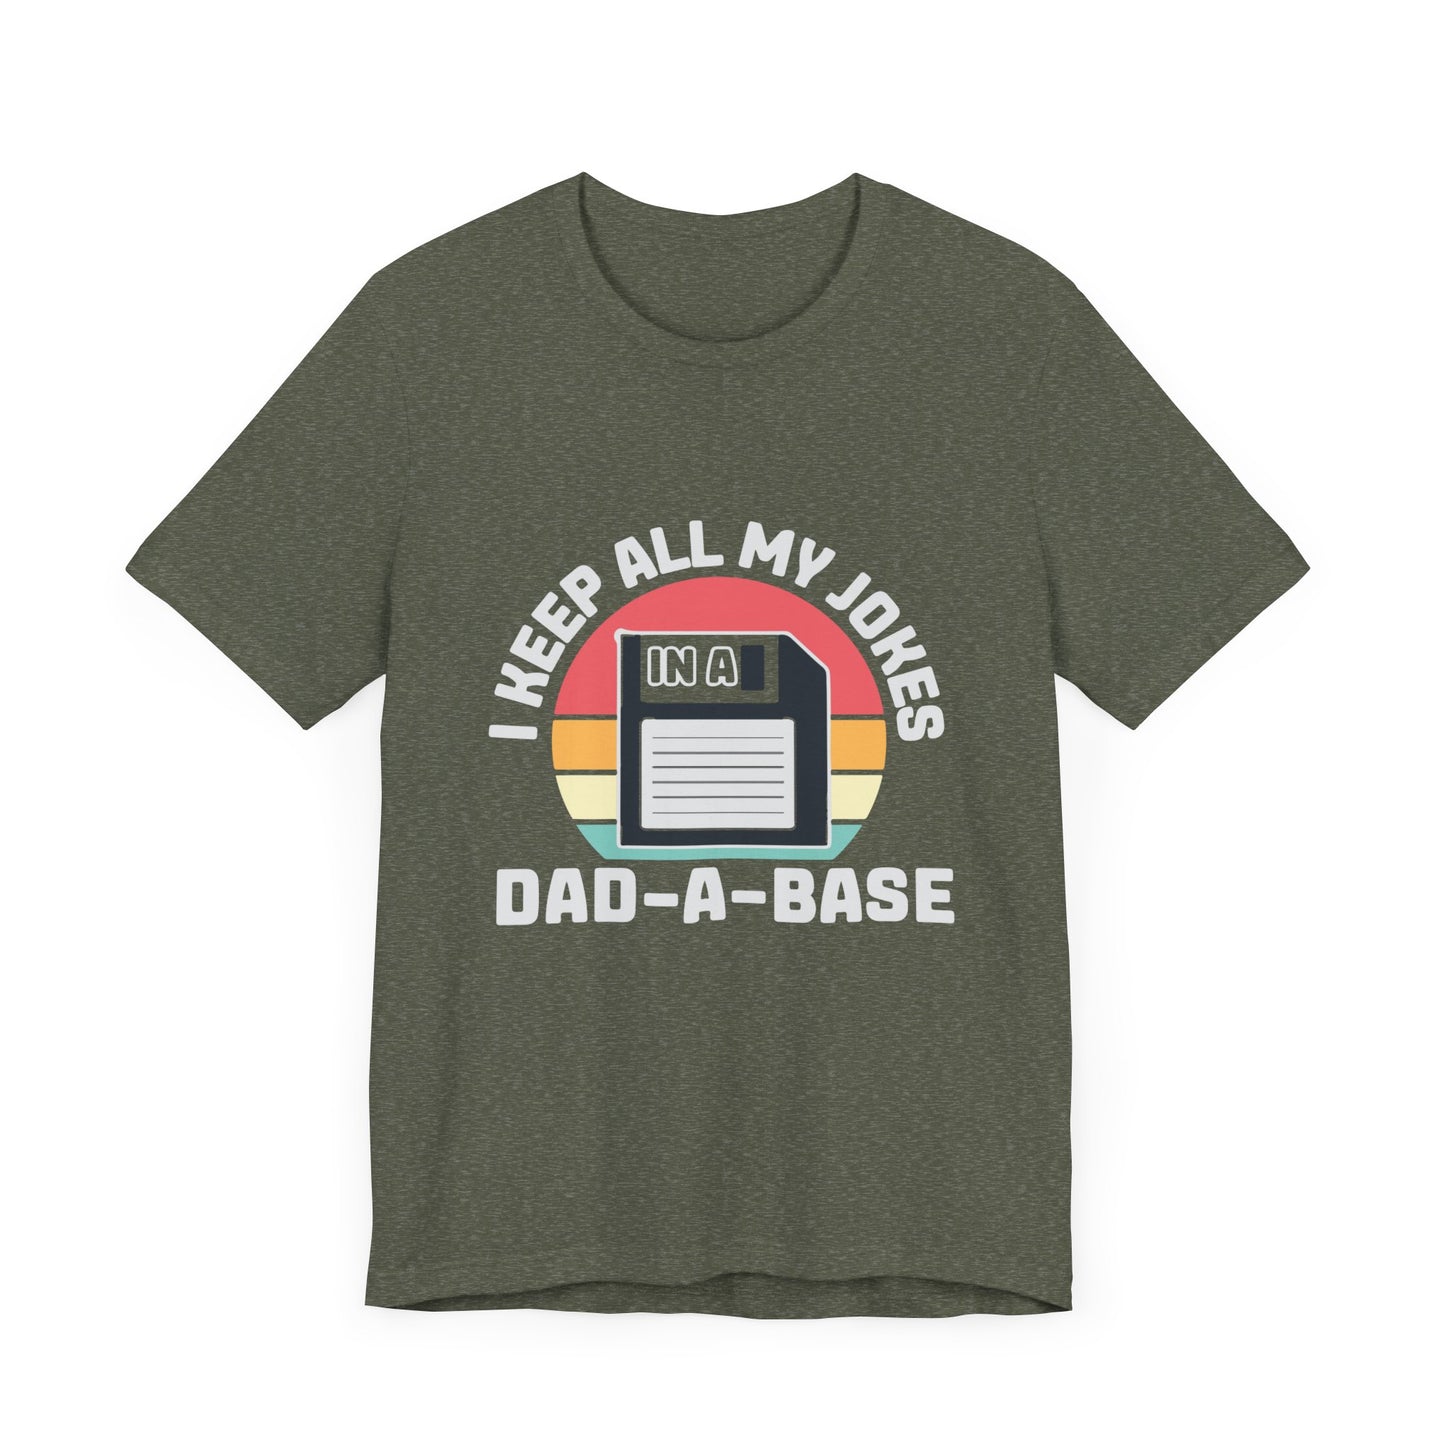 Dad Jokes Dad-A-Base Funny Short Sleeve Tee